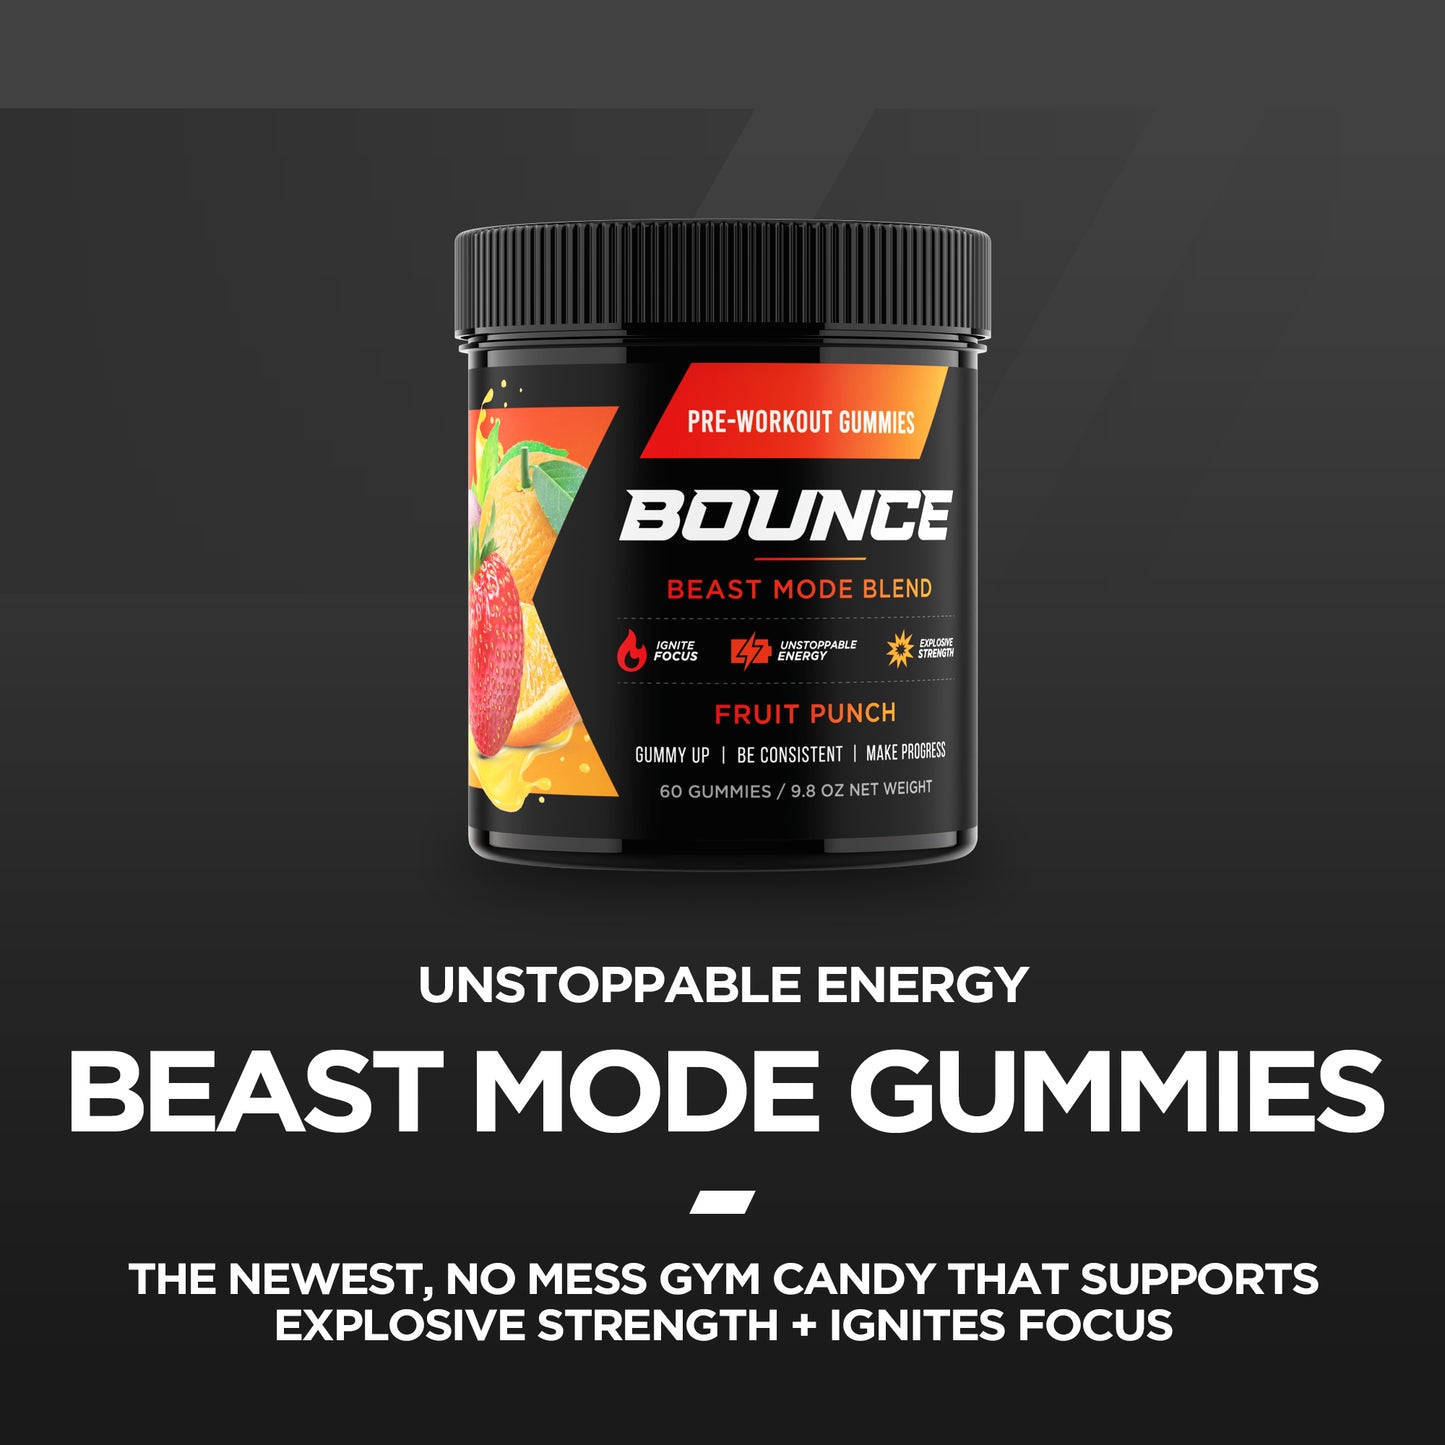 Pre-Workout Gummies - Beast Mode